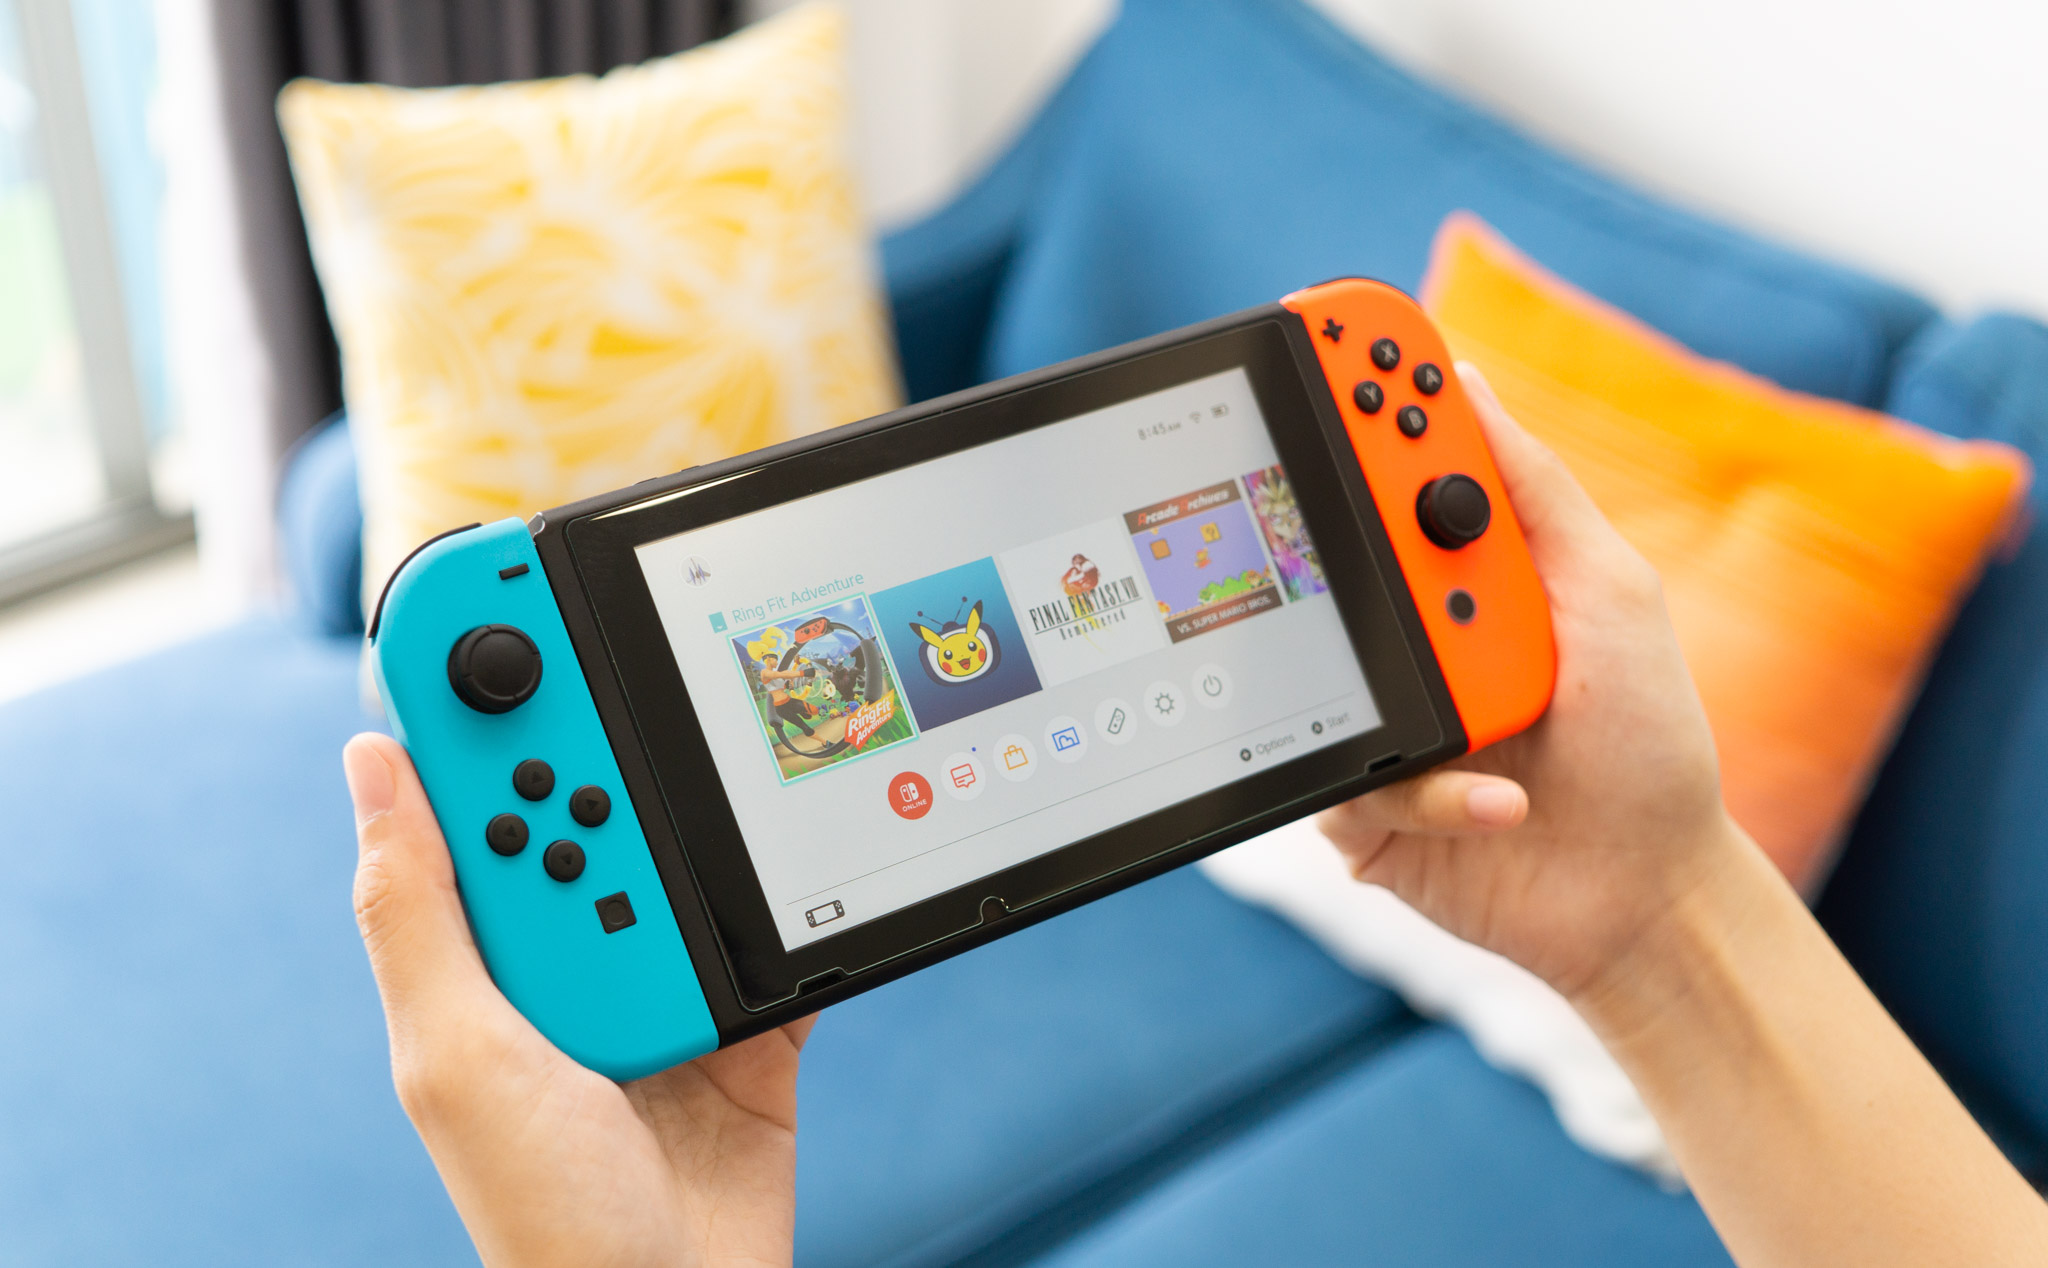 Nintendo Switch vượt doanh số PS4, đạt ngưỡng 122.55 triệu máy trên toàn thế giới